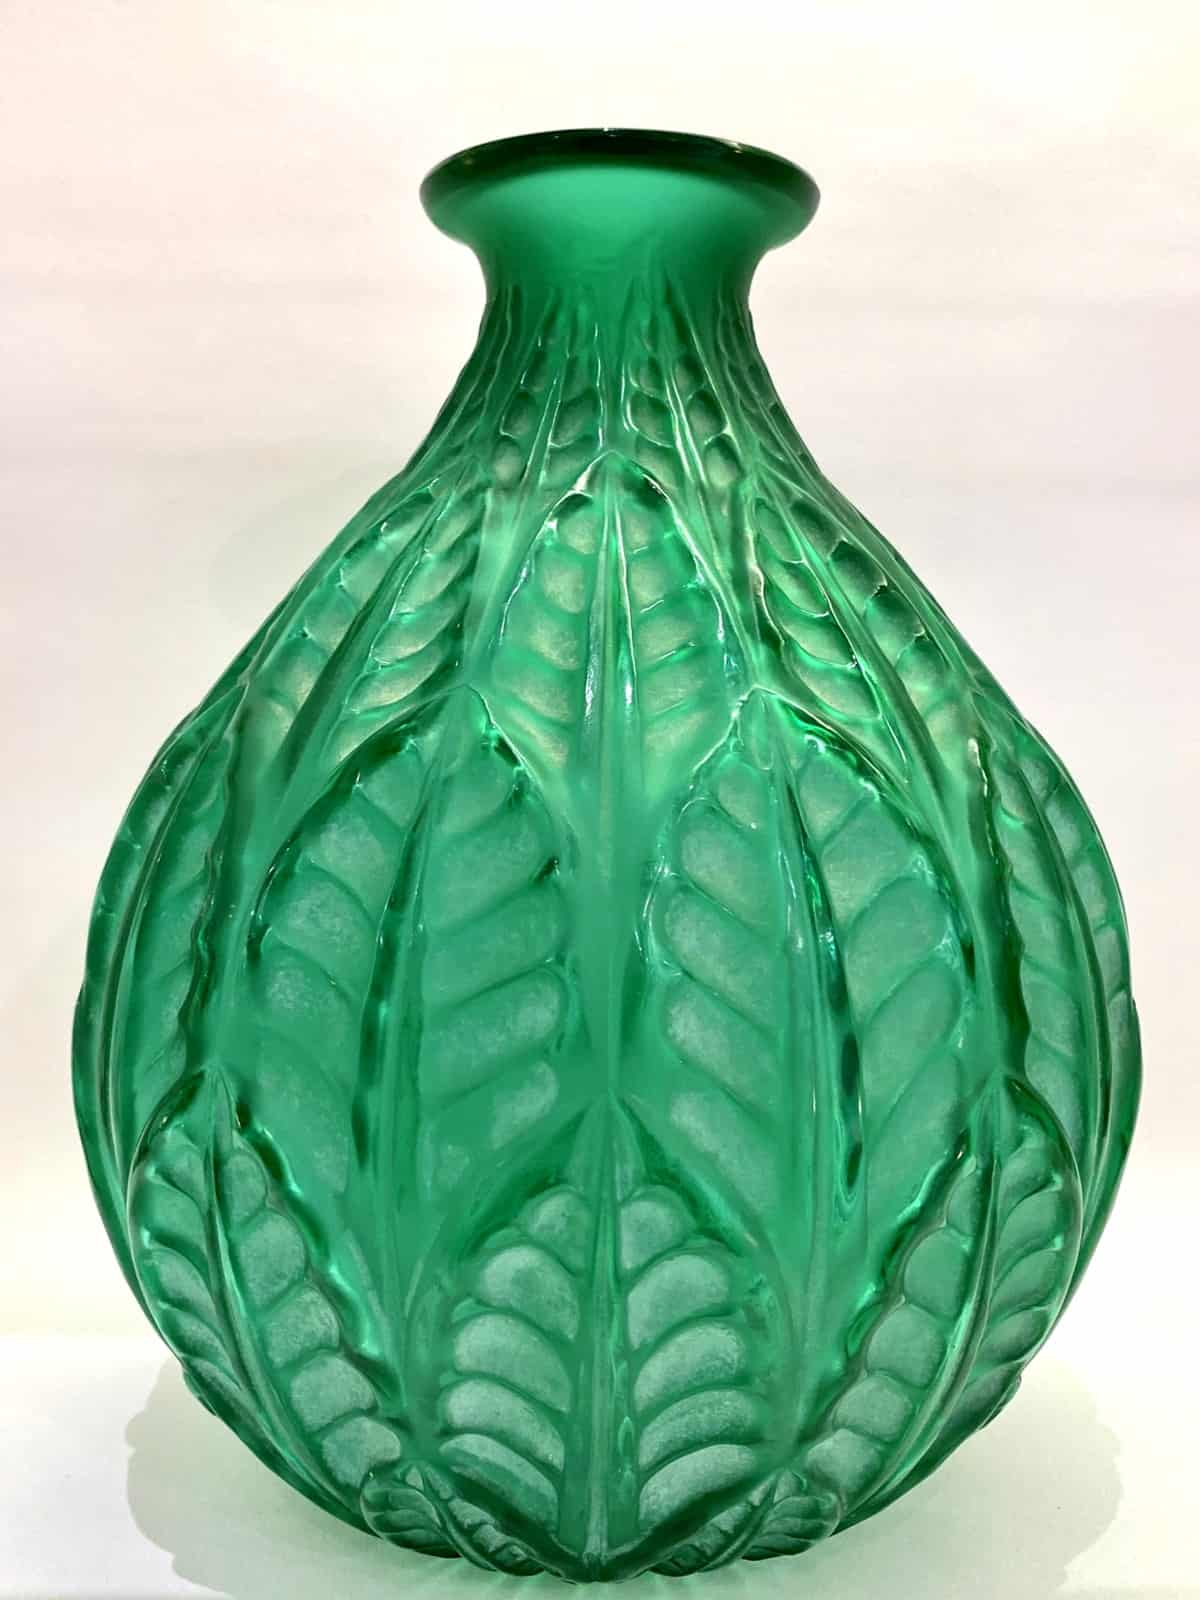 Vase "Malesherbes" verre vert émeraude patiné blanc de René LALIQUE